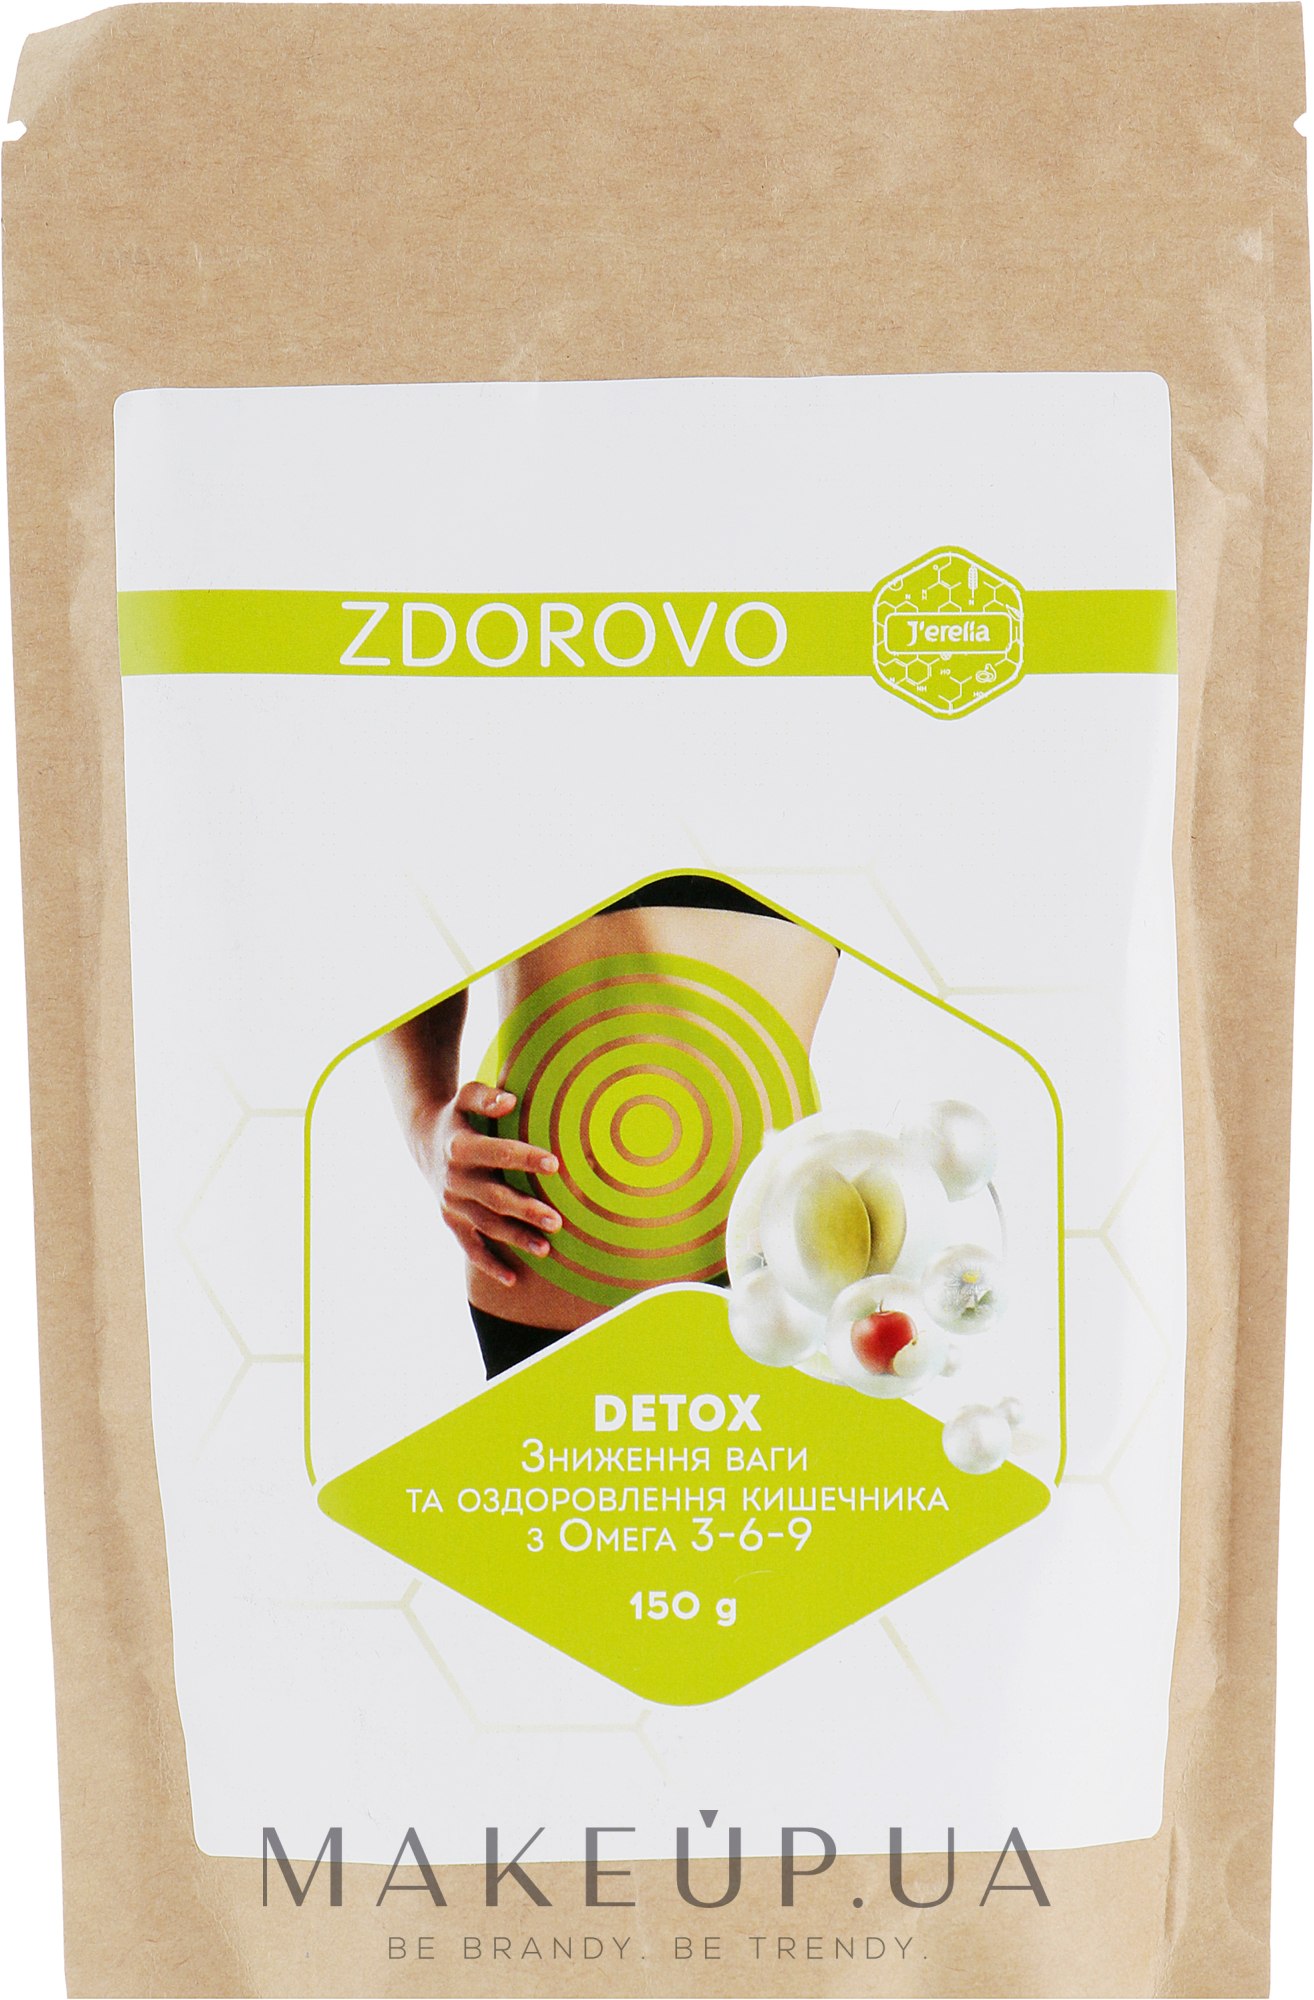 Дієтичний продукт для зниження ваги і оздоровлення кишечника з Омега 3-6-9 - J'erelia Zdorovo — фото 150g